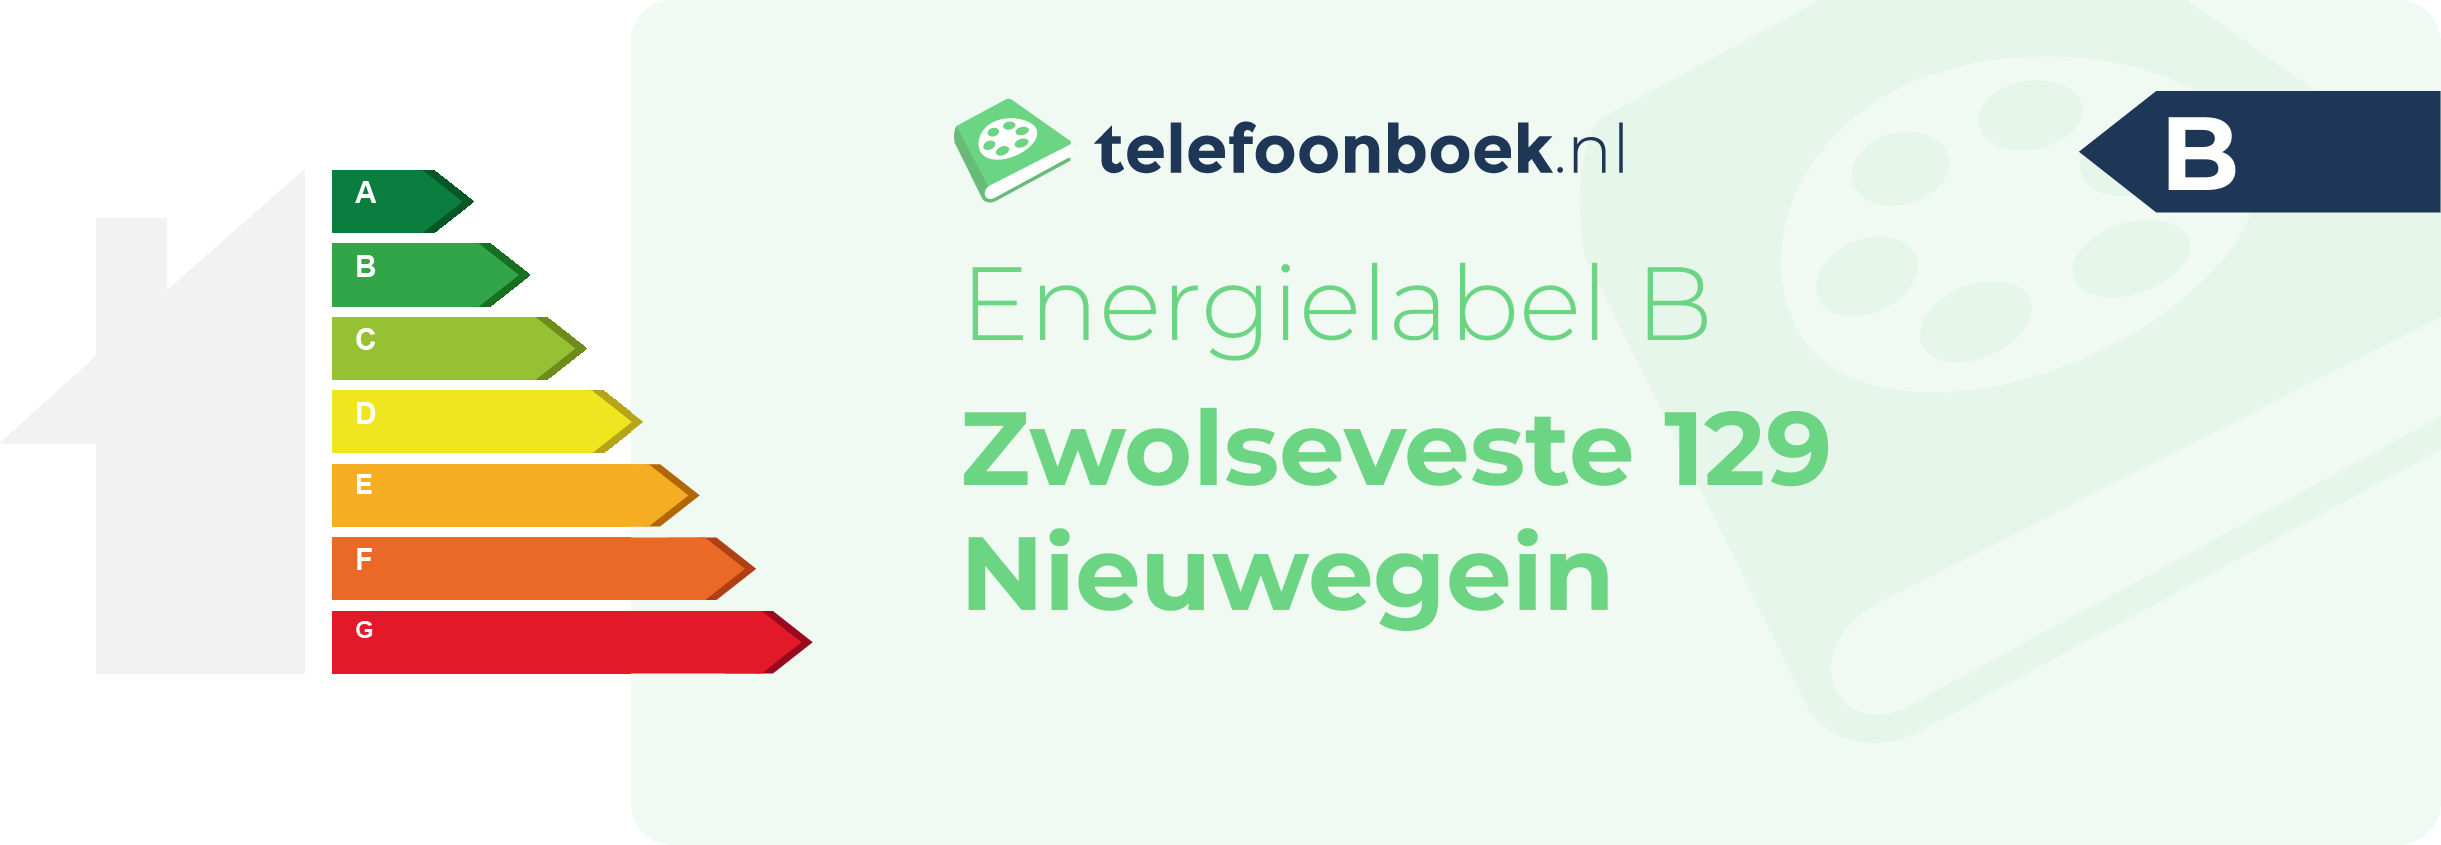 Energielabel Zwolseveste 129 Nieuwegein